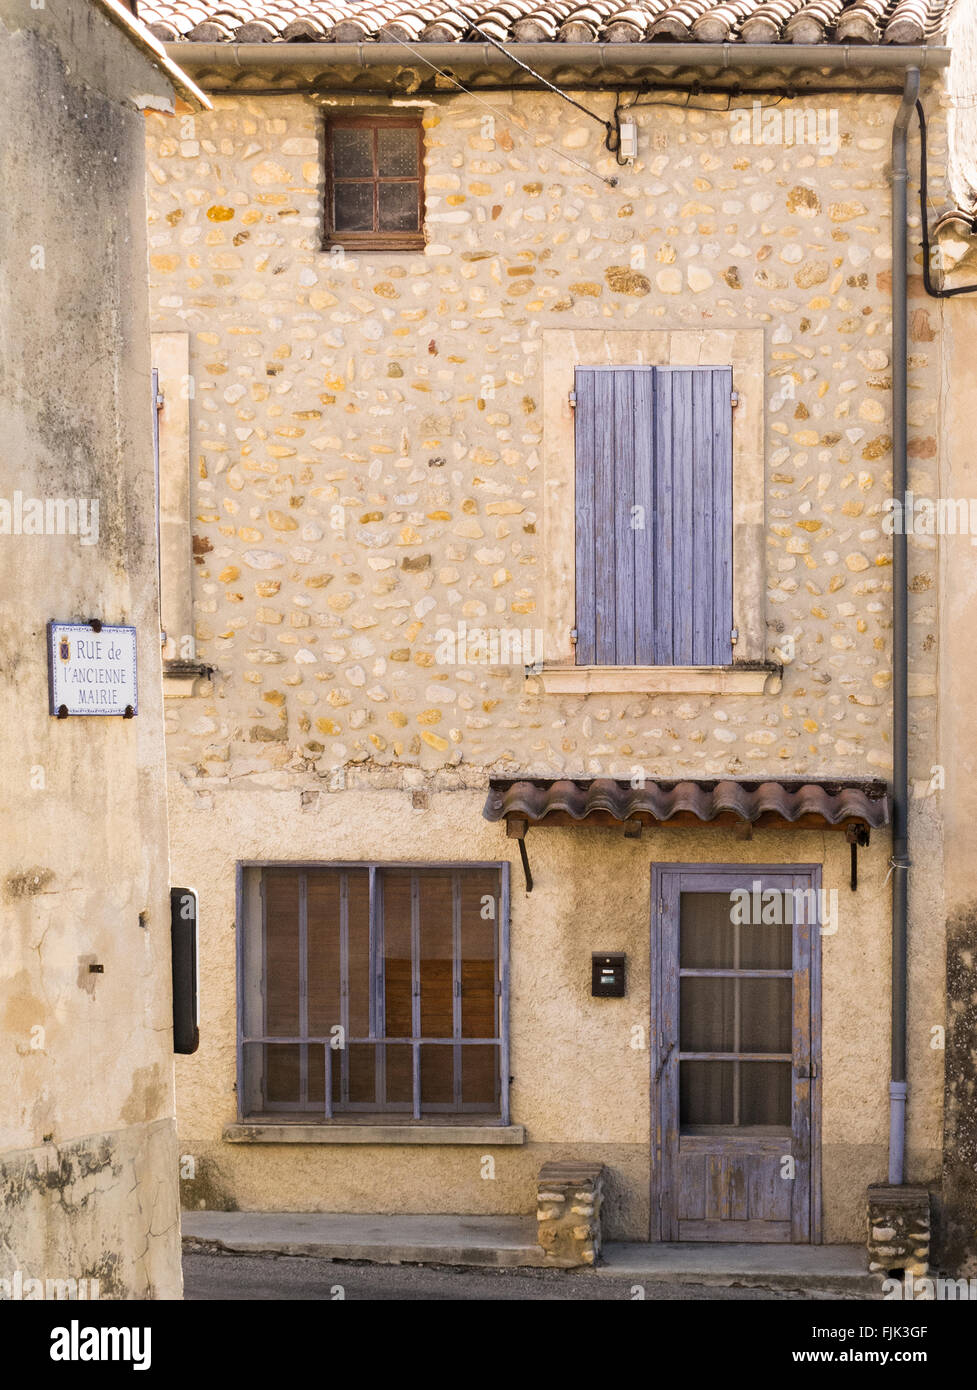 Vieille maison en pierre rustique avec volets peints dans le village historique de Rasteau, Vaucluse, Provence, France. L'architecture locale typique. Banque D'Images